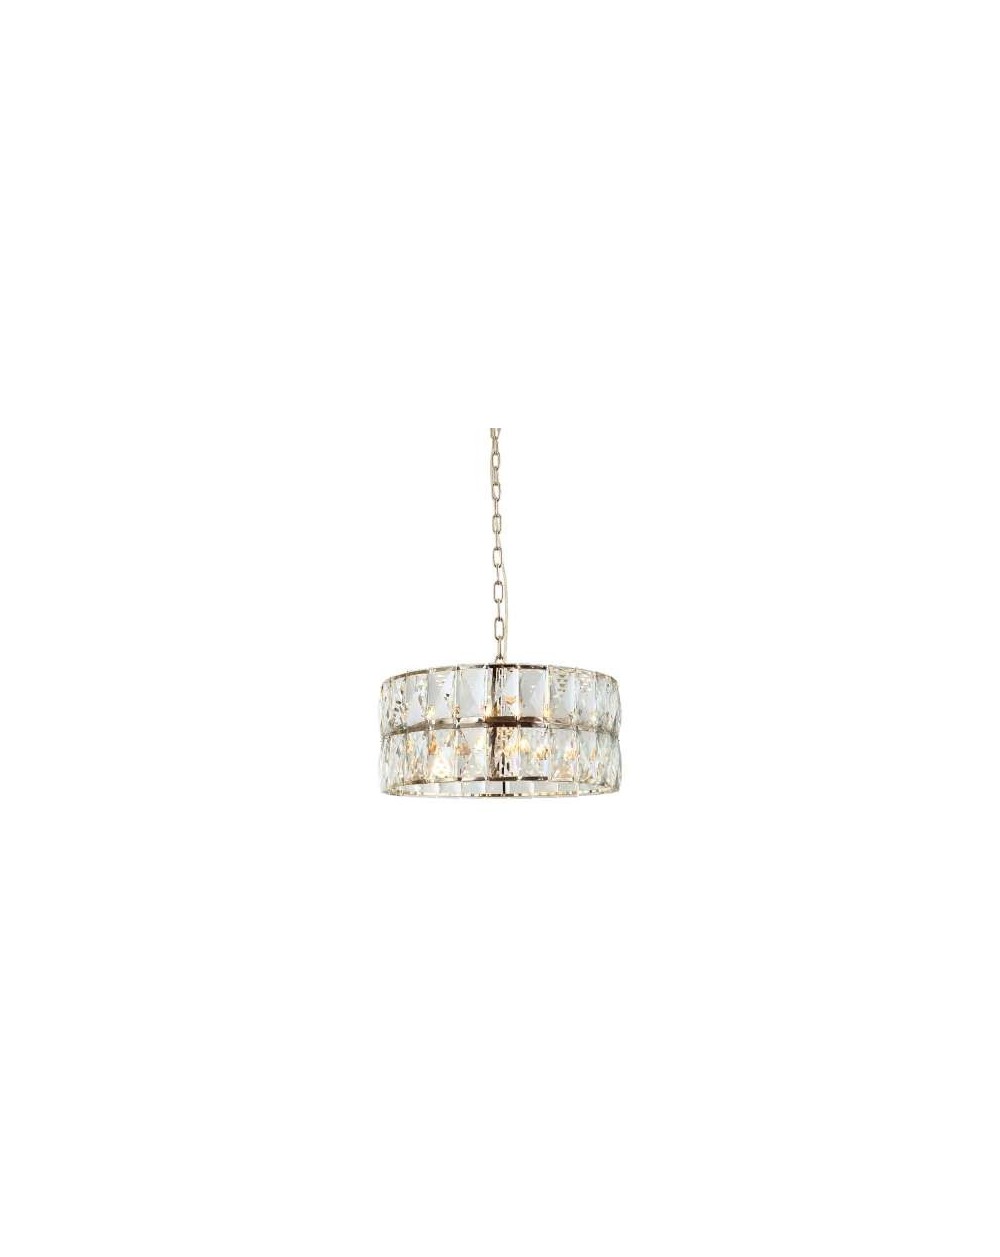 Lampa wisząca Intero Gold S - Orlicki Design nowoczesny kryształowy żyrandol